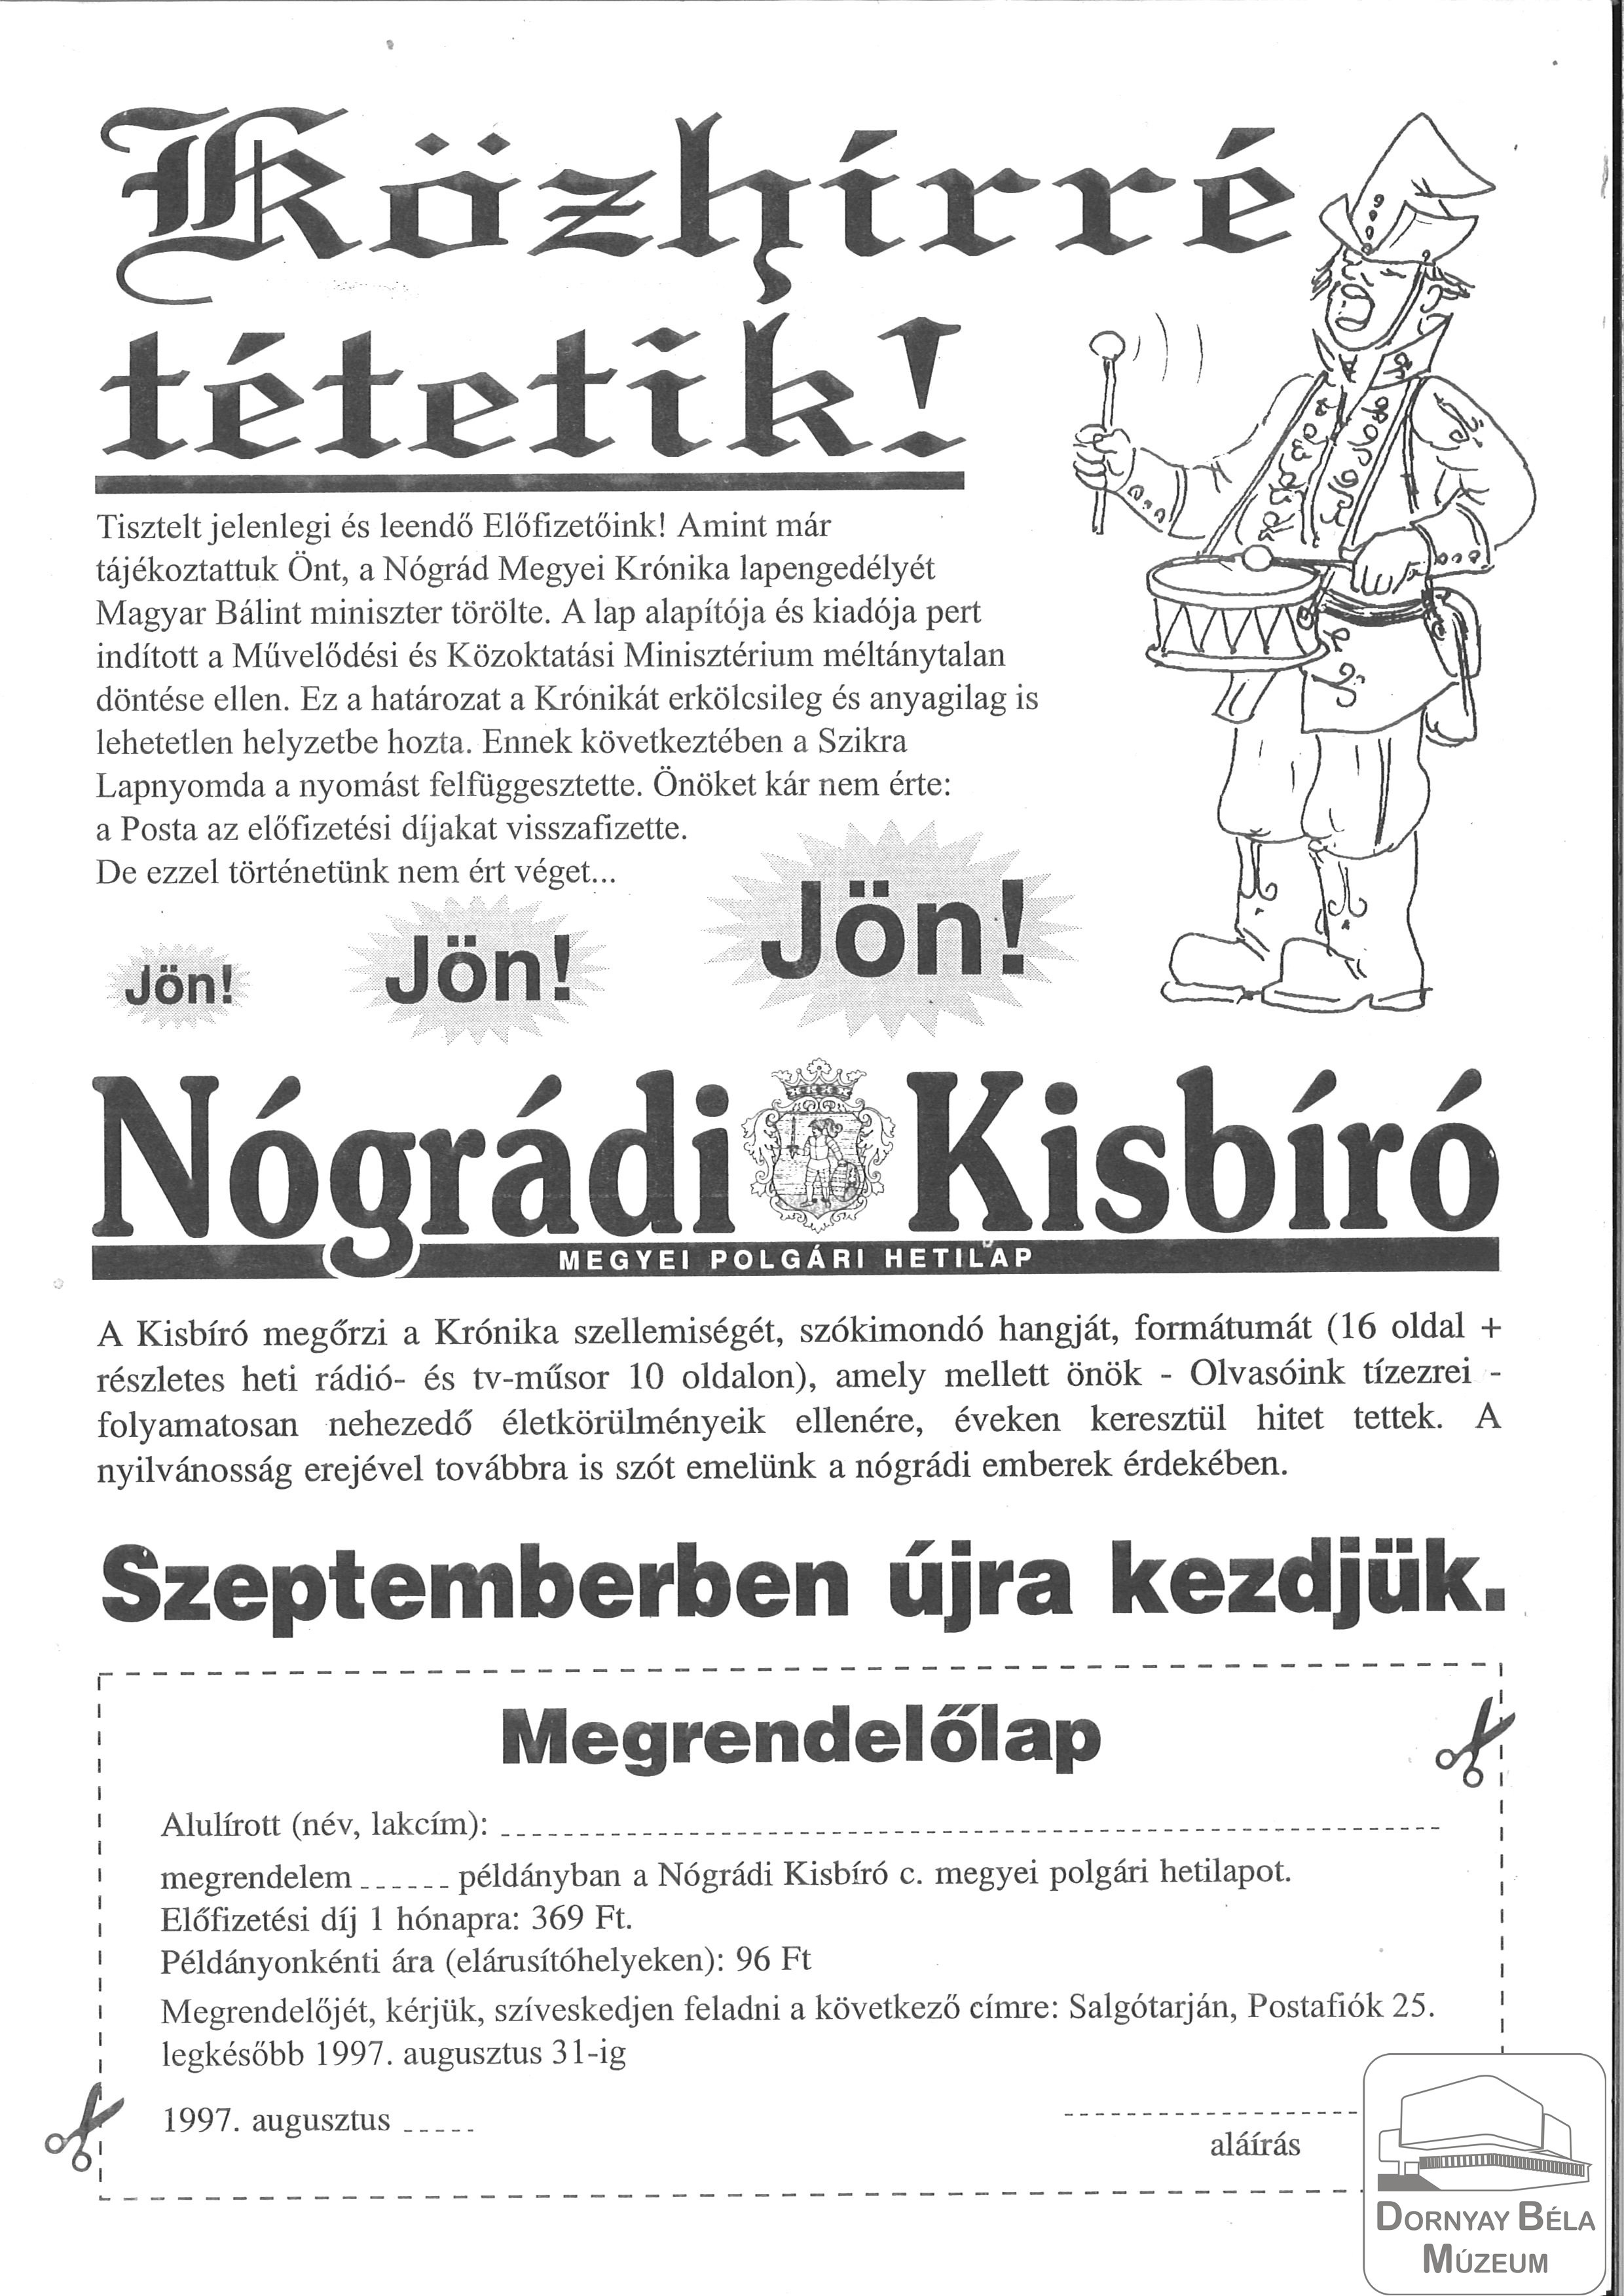 Nógrádi Kisbíró c. hetilap megjelenése (Dornyay Béla Múzeum, Salgótarján CC BY-NC-SA)